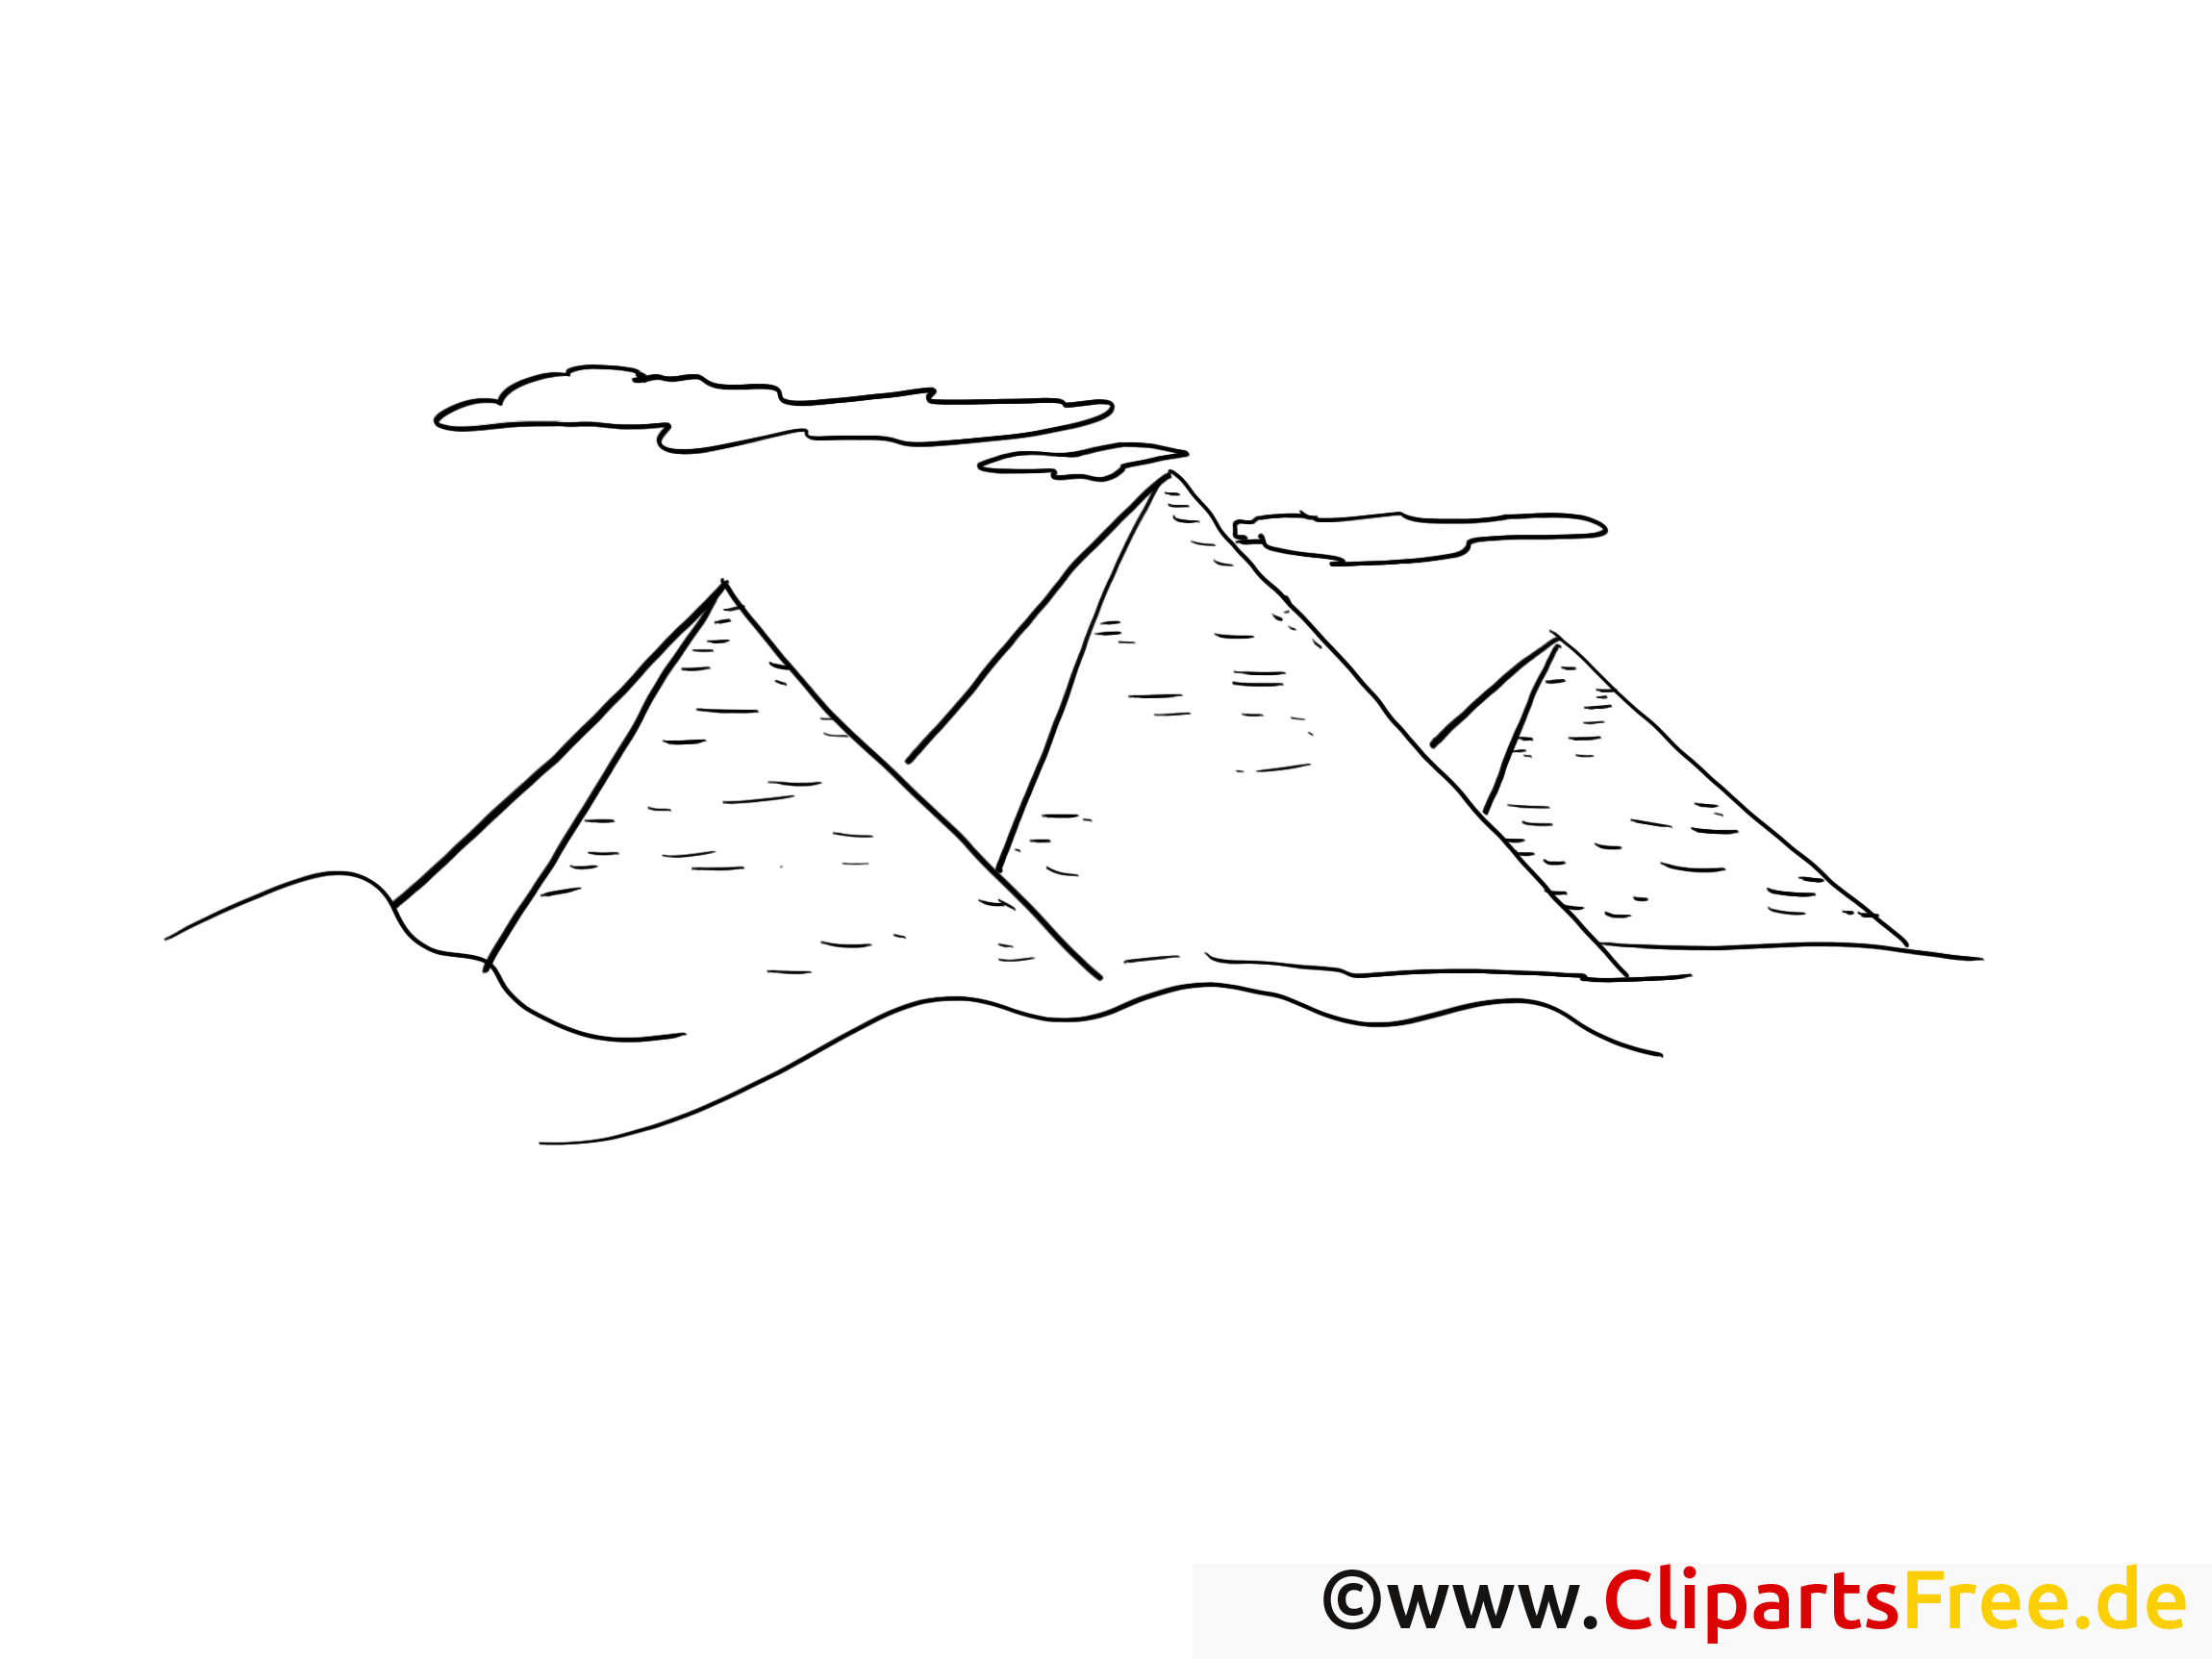 Pyramides clip art gratuit – Voyage à colorier